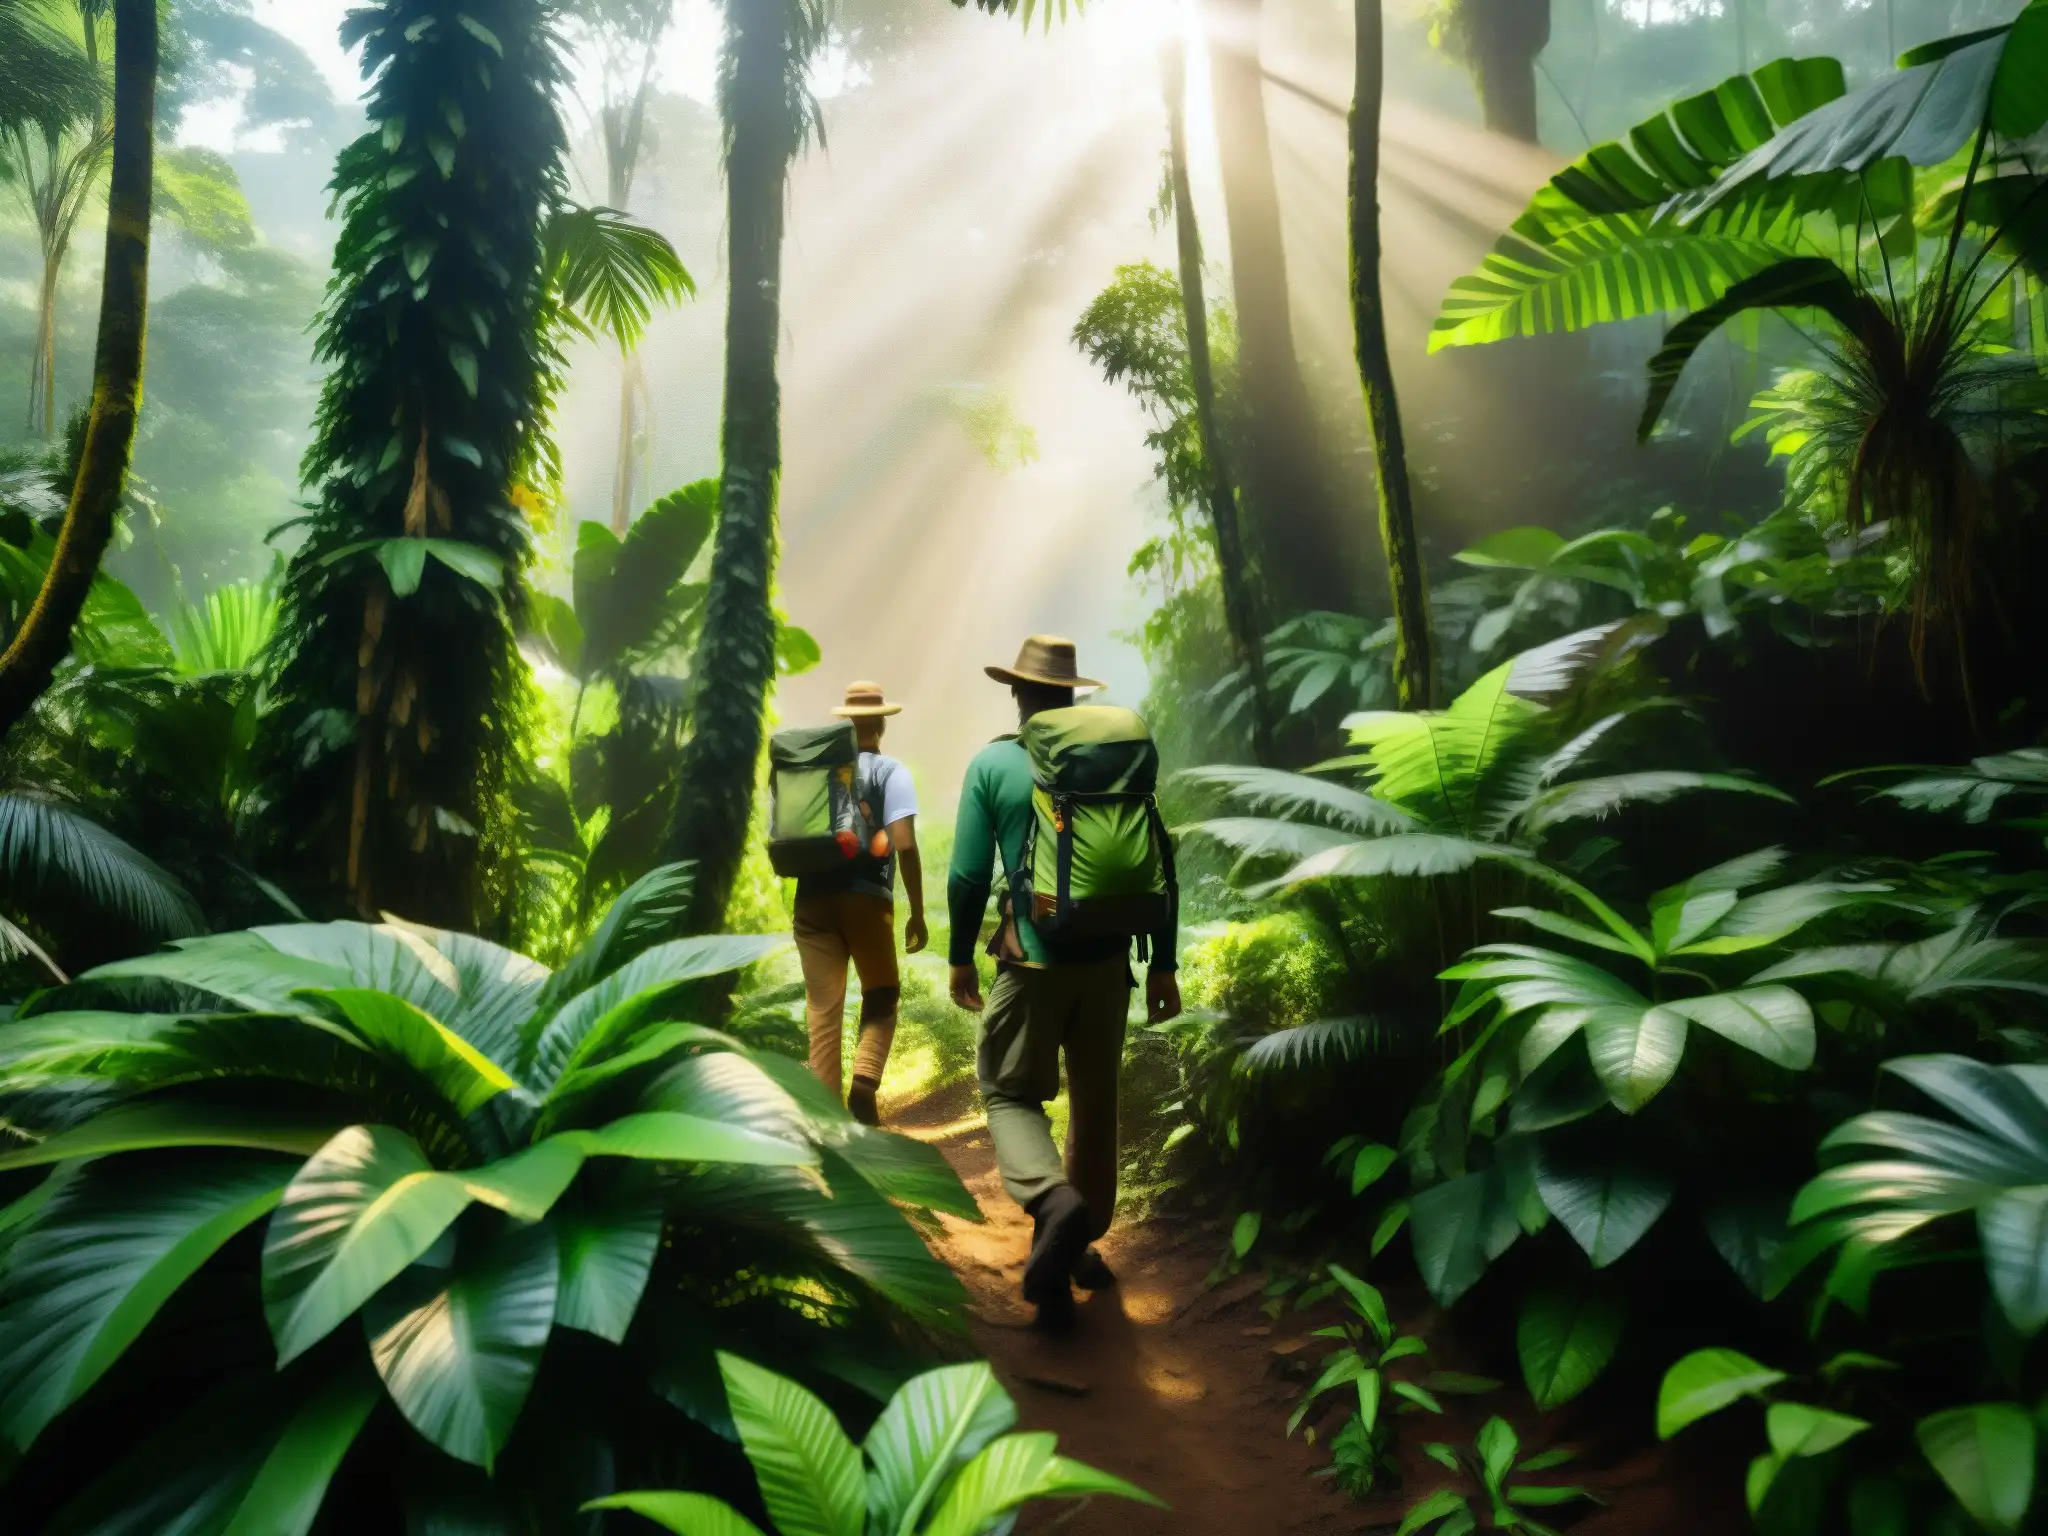 Exploradores en búsqueda de la leyenda del dorado, adentrándose en la densa selva amazónica entre árboles altos y exuberante vegetación